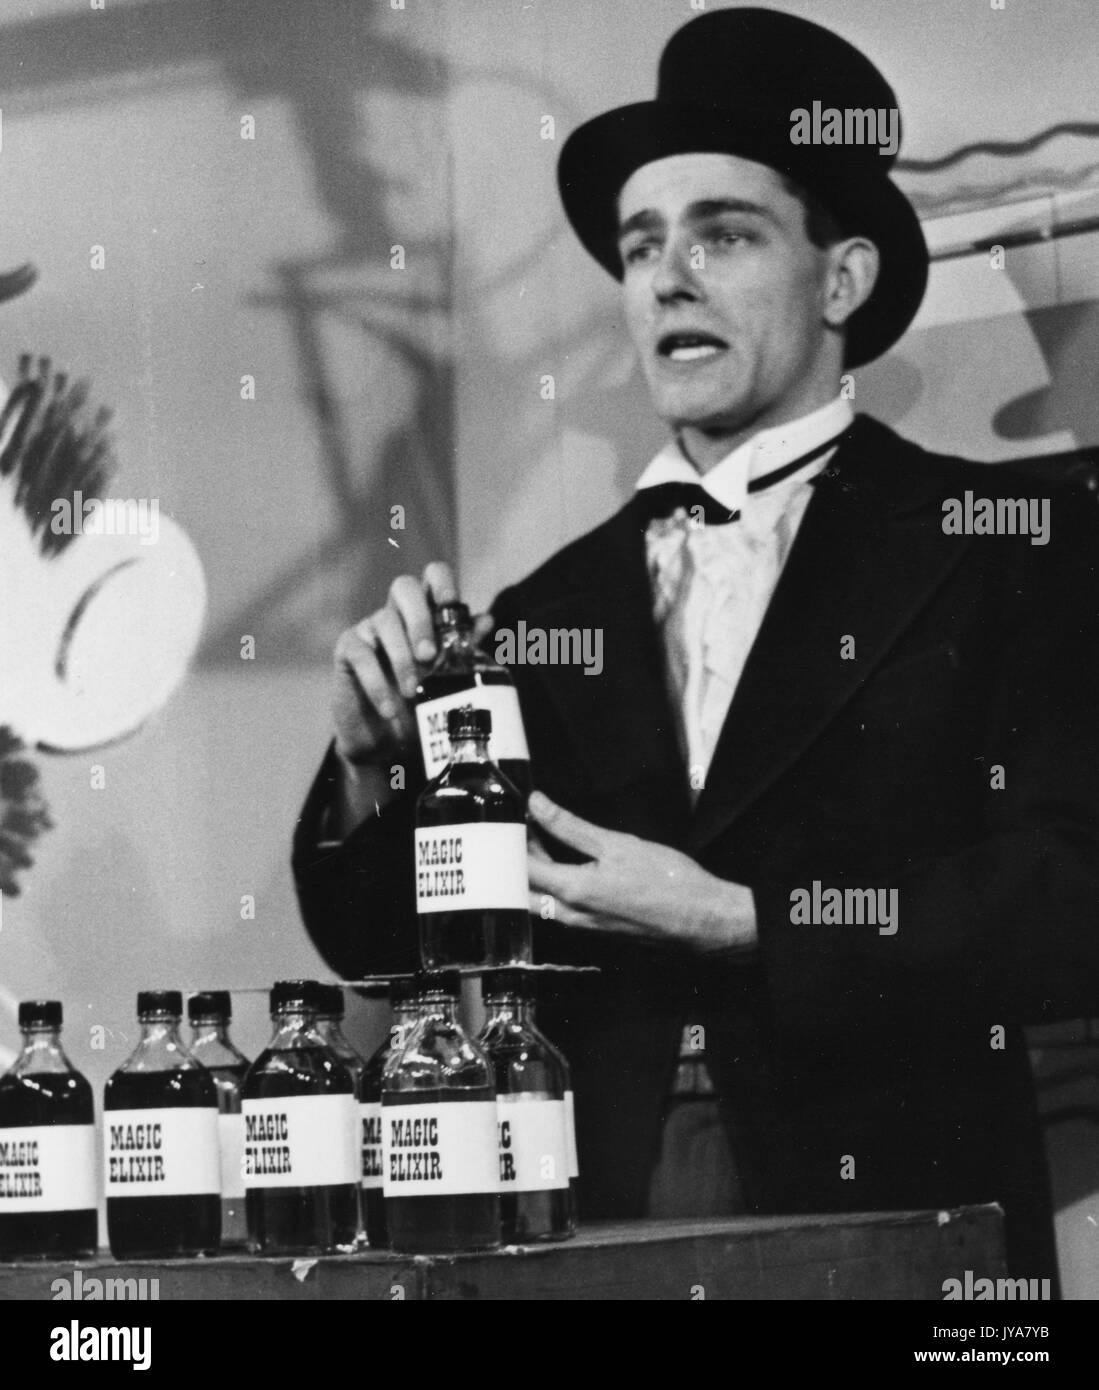 Attore edmond prelievo è il set di riprese per la Johns Hopkins science review, egli indossa una tuta, un bow tie e un nero top hat, egli è in possesso di una bottiglia denominata magic elisir, egli è in piedi dietro un tavolo azienda molte bottiglie denominata magic elisir, 1955. Foto Stock